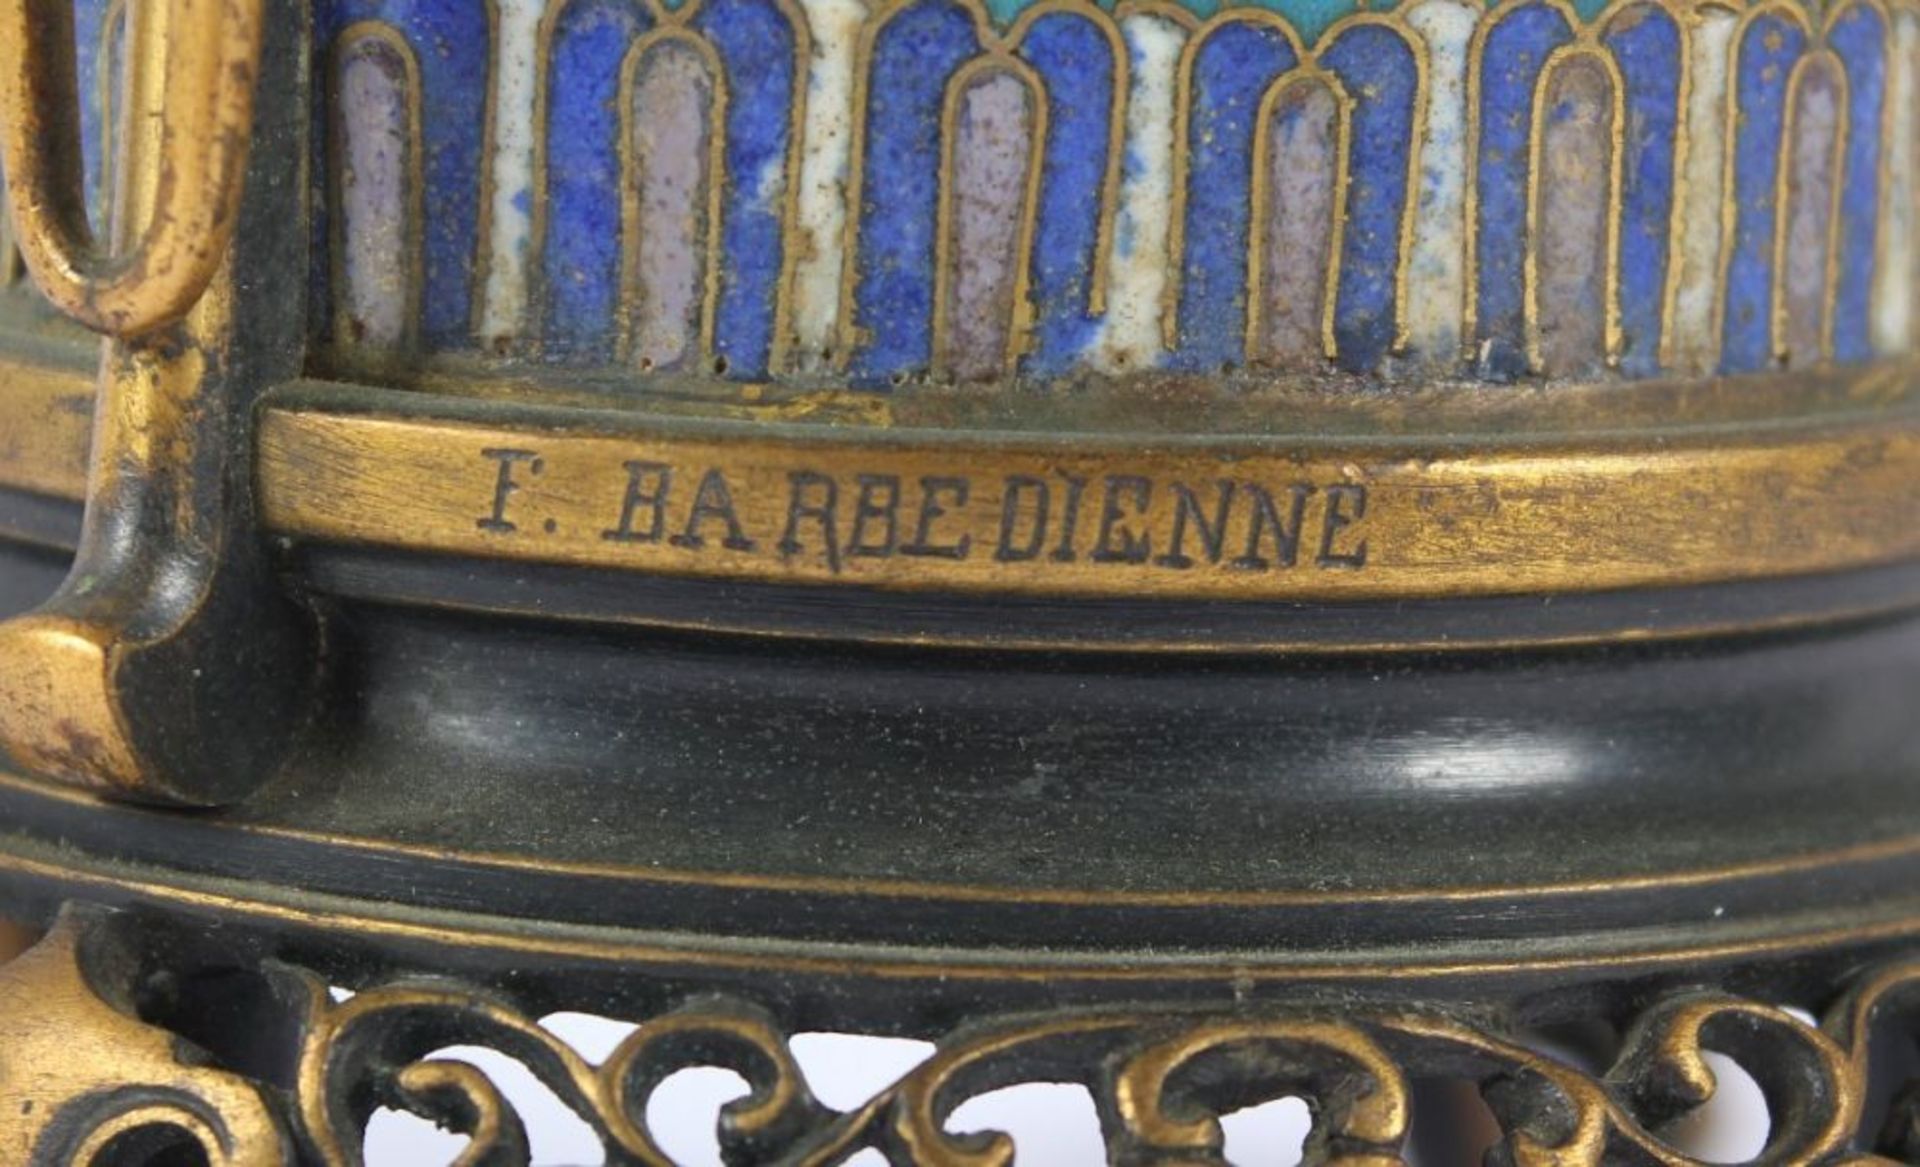 CLOISONNÉ-GEFÄSS IM CHINESISCHEN STIL, Bronze, H 22, seitlich signiert F. Barbedienne, PARIS, E.19. - Image 2 of 2